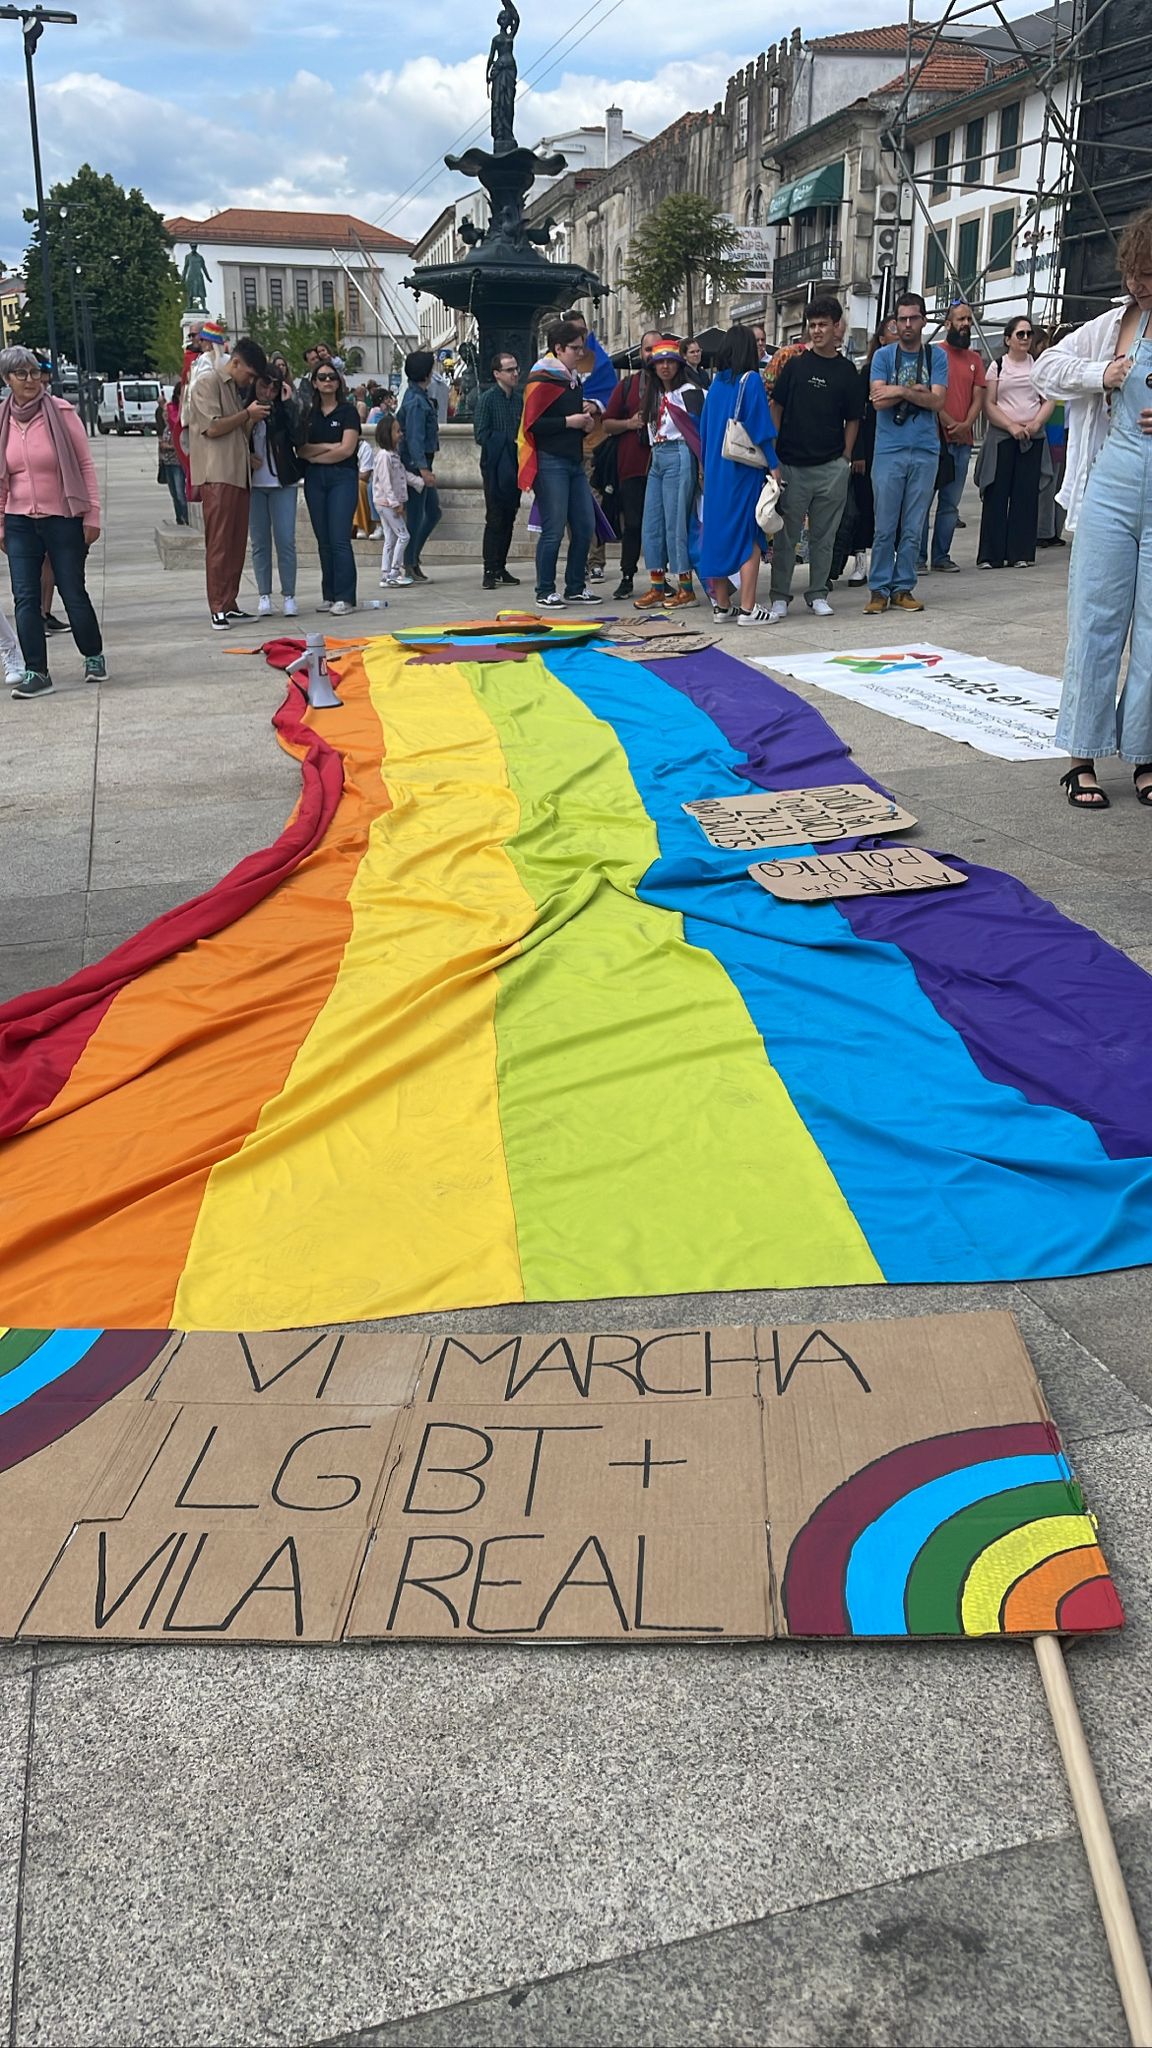 Vila Real celebrou a 6ª Marcha LGBT+